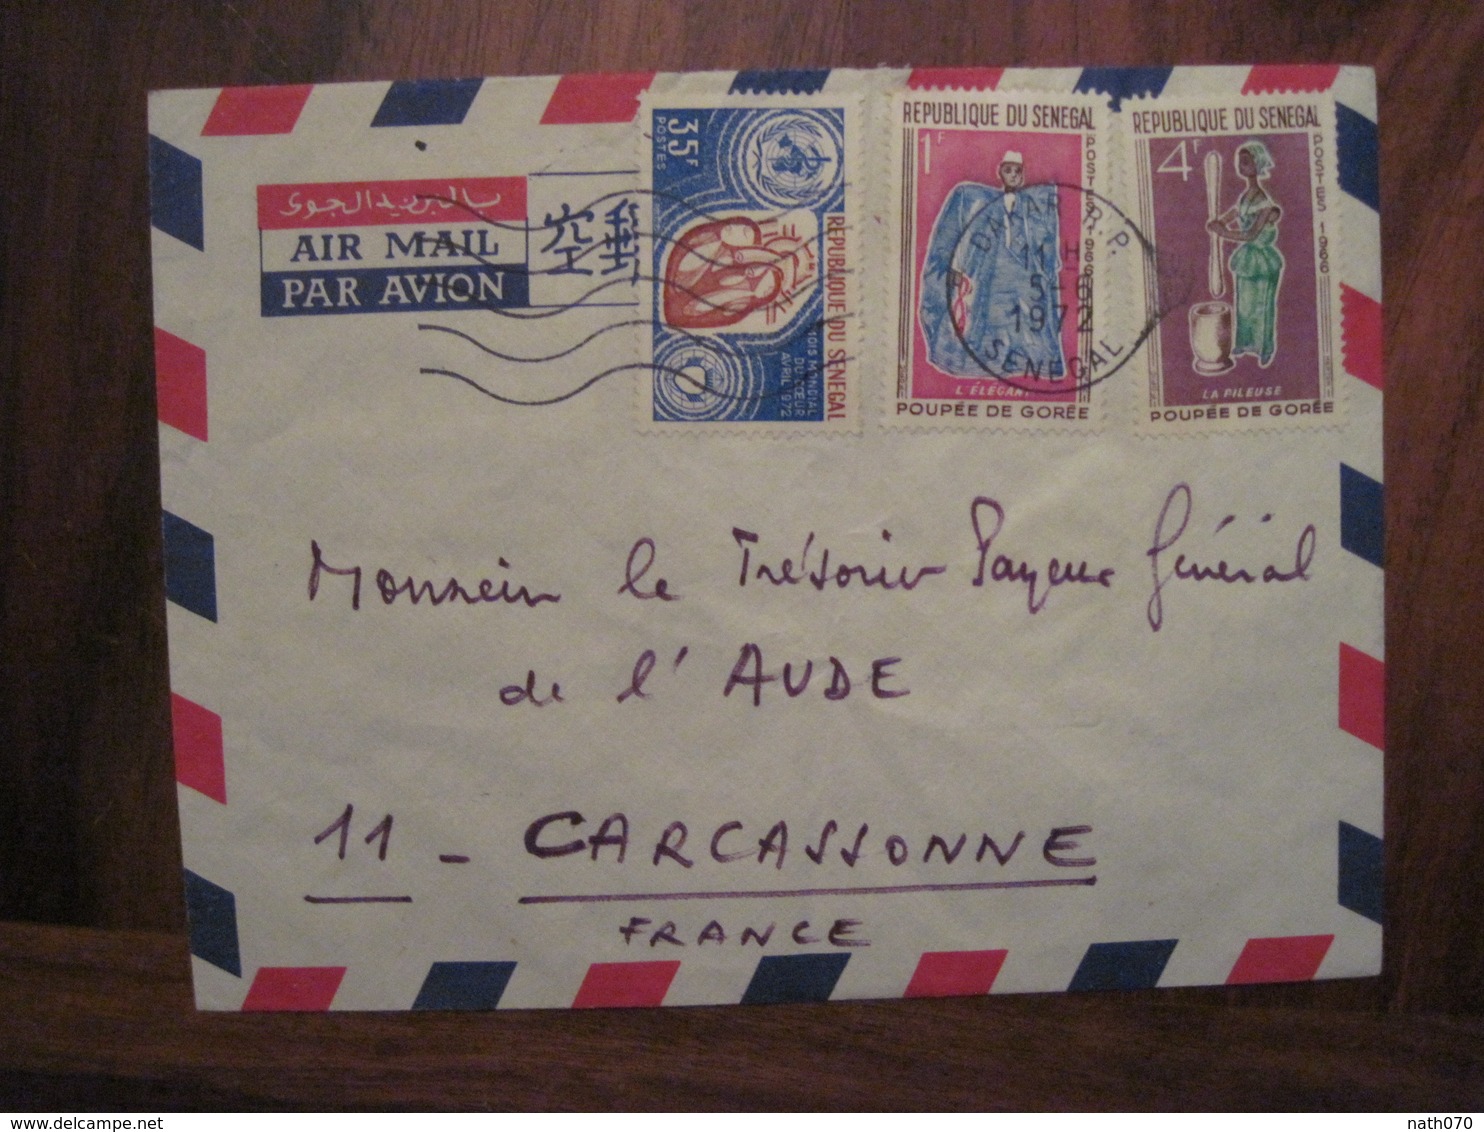 SENEGAL 1972 CARCASSONNE Cover Enveloppe Air Mail Par Avion Mois Mondial Du Coeur 35f Poupée De Gorée 4f + 1f - Sénégal (1960-...)